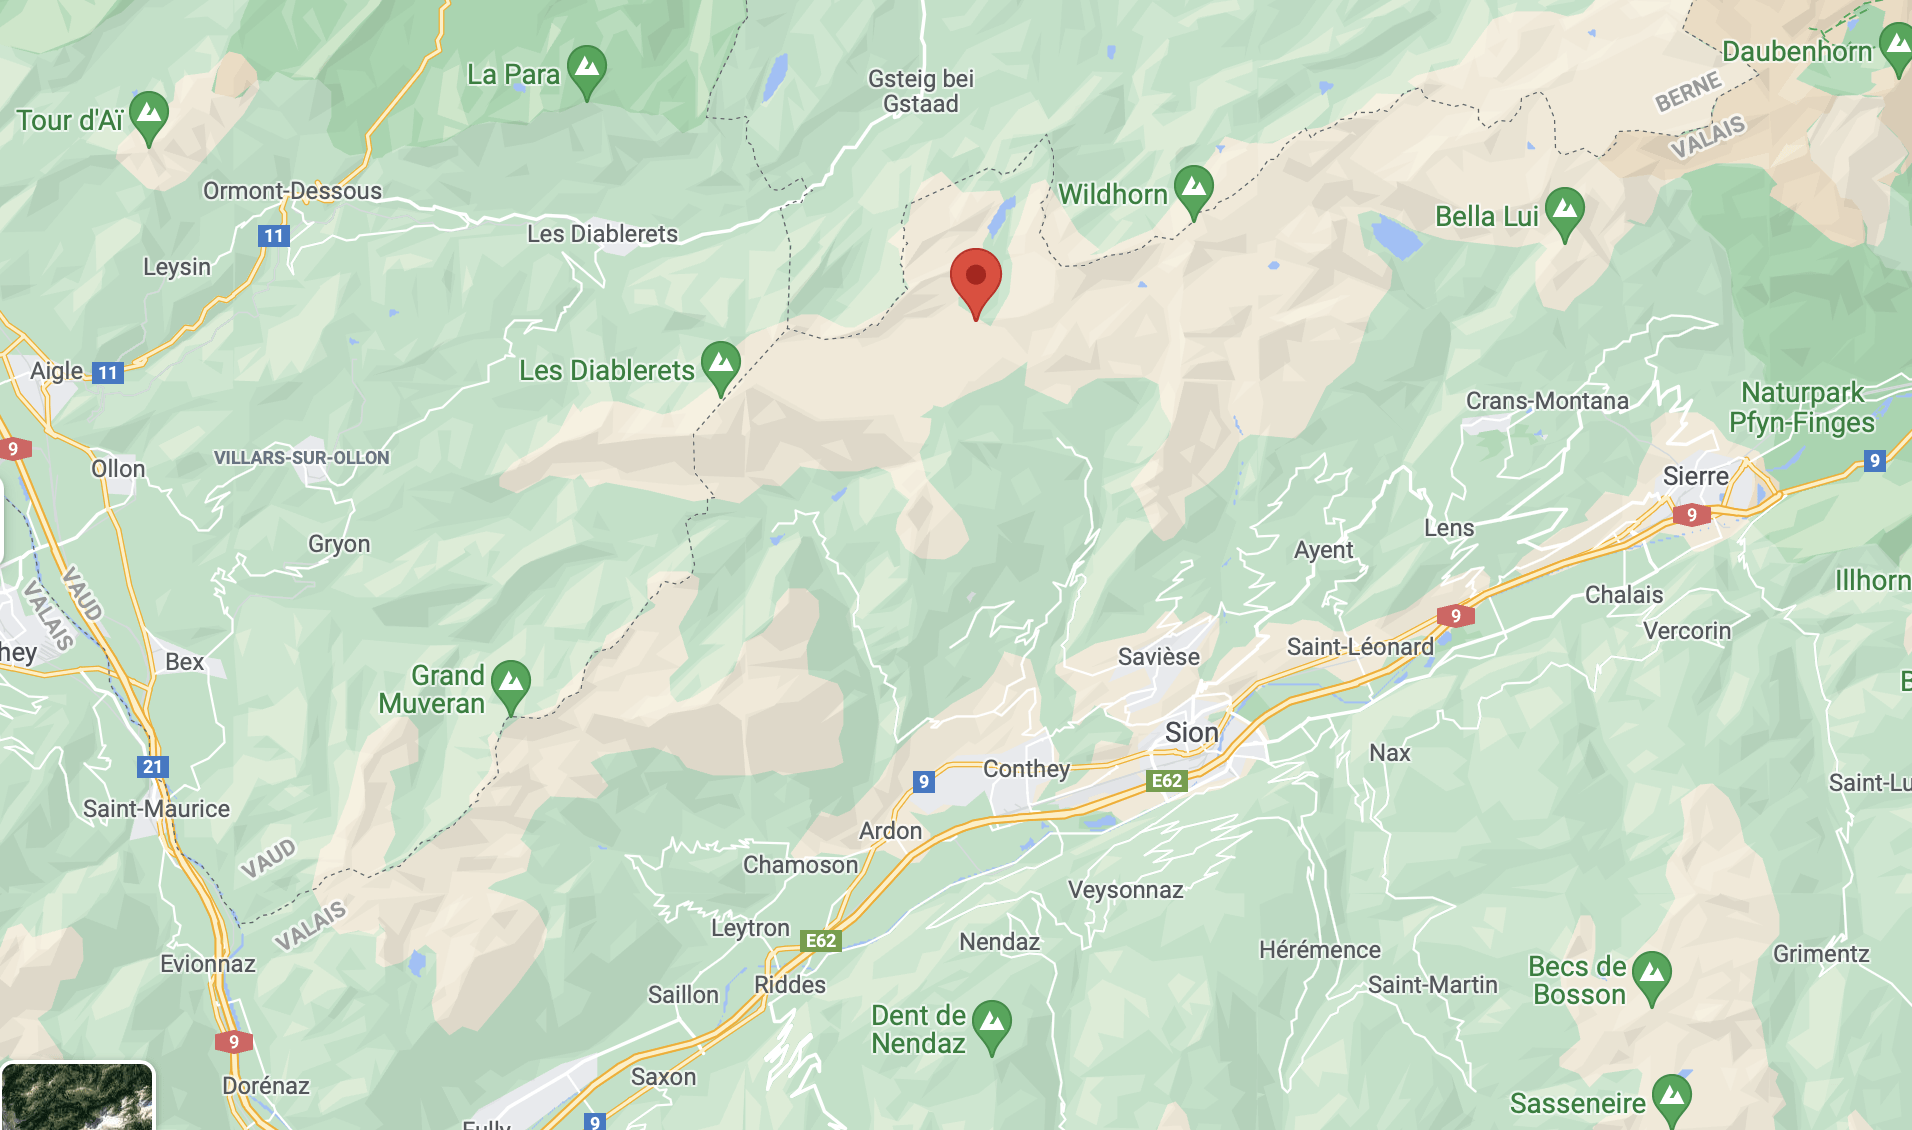 Un tremblement de terre s'est produit lundi soir à 21h13 en Valais, à environ 8 km au sud-est du Sanetschpass, à une profondeur de 4,9 km.